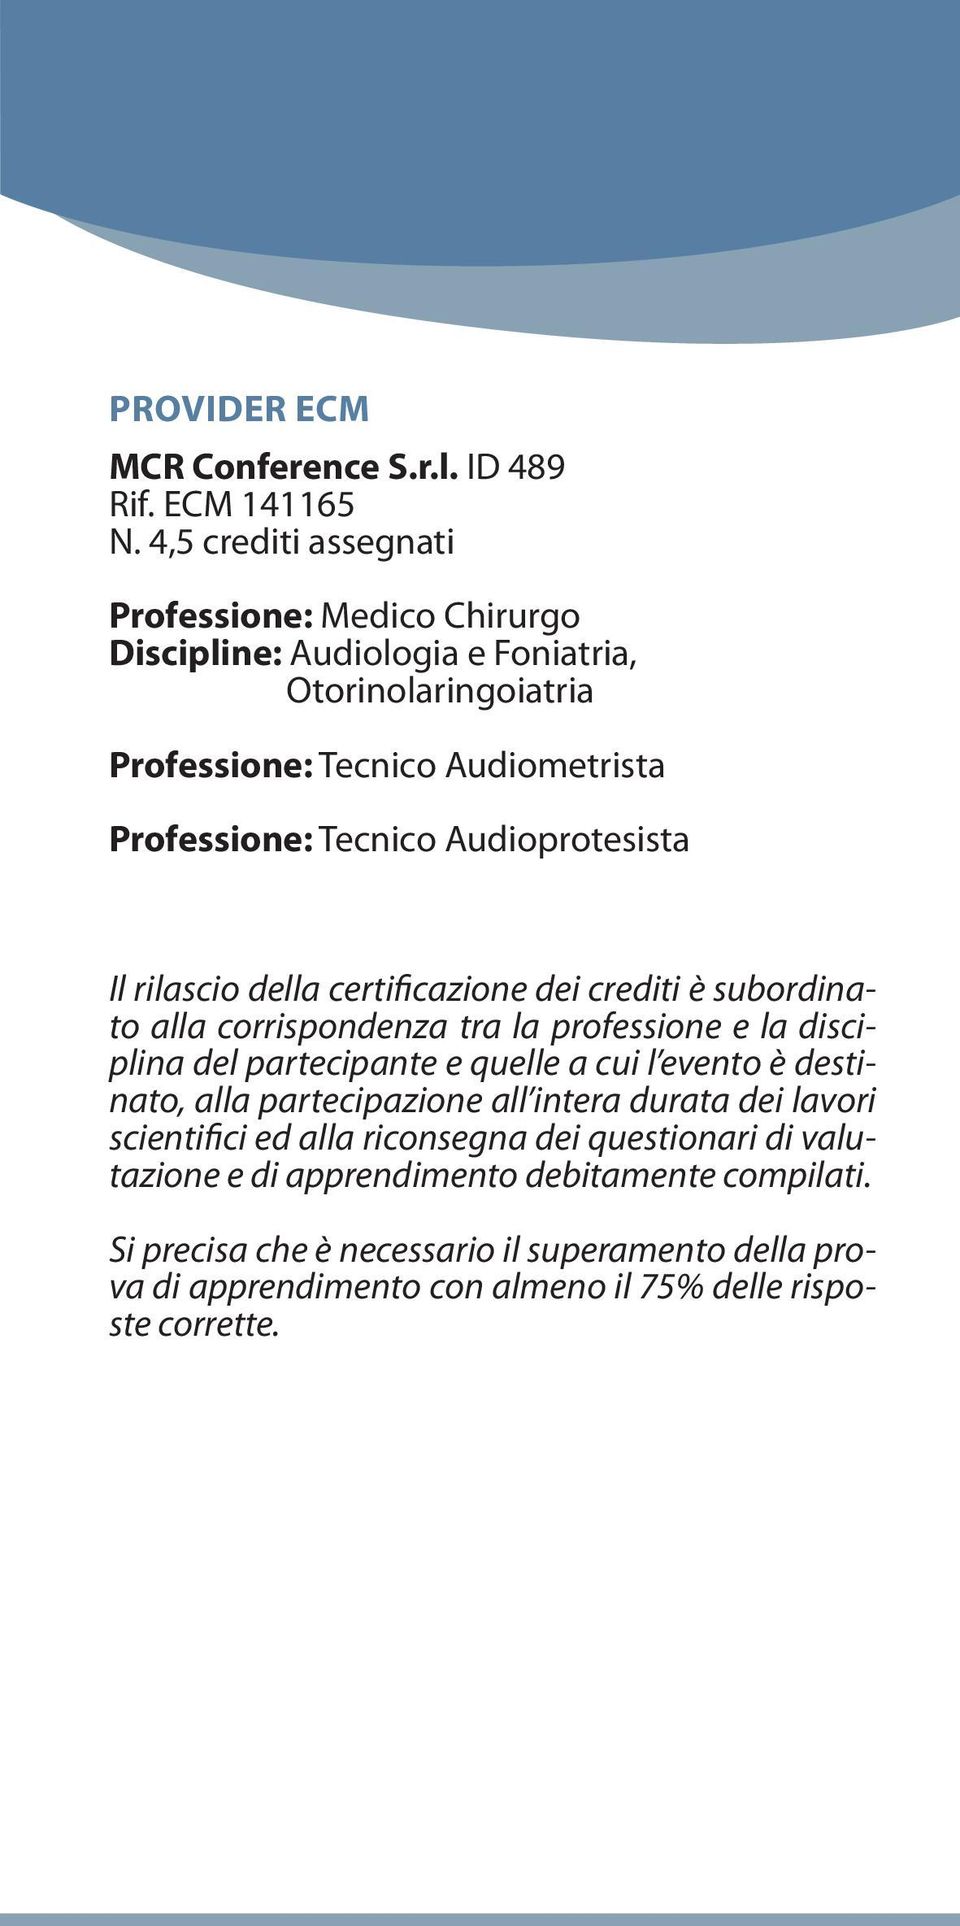 Audioprotesista Il rilascio della certificazione dei crediti è subordinato alla corrispondenza tra la professione e la disciplina del partecipante e quelle a cui l